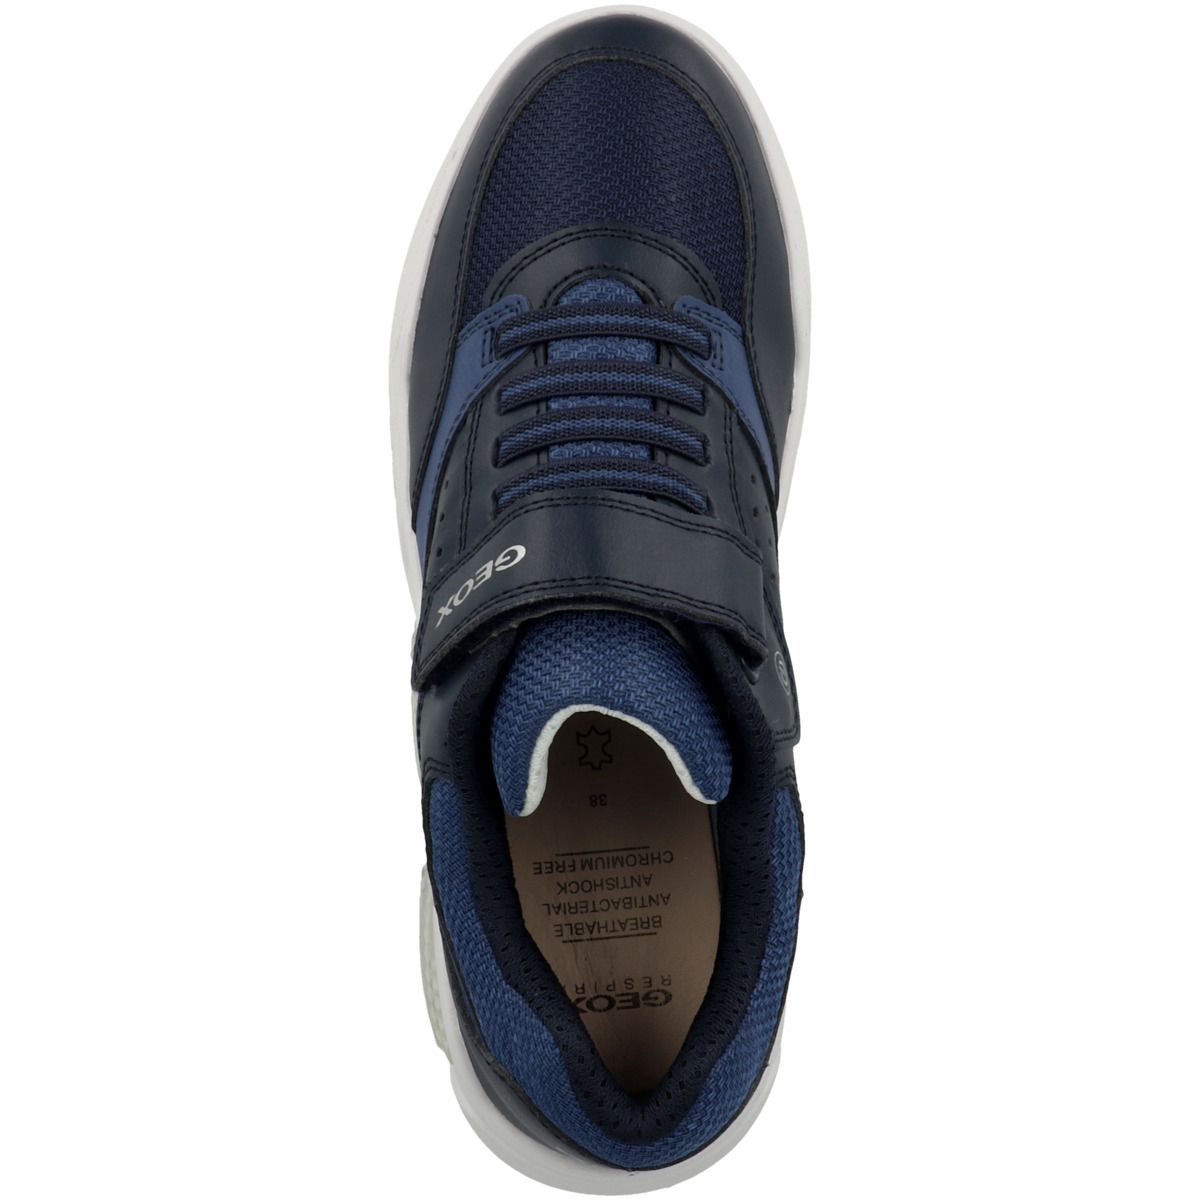 Geox J Illuminus low B. dunkelblau Sneaker B